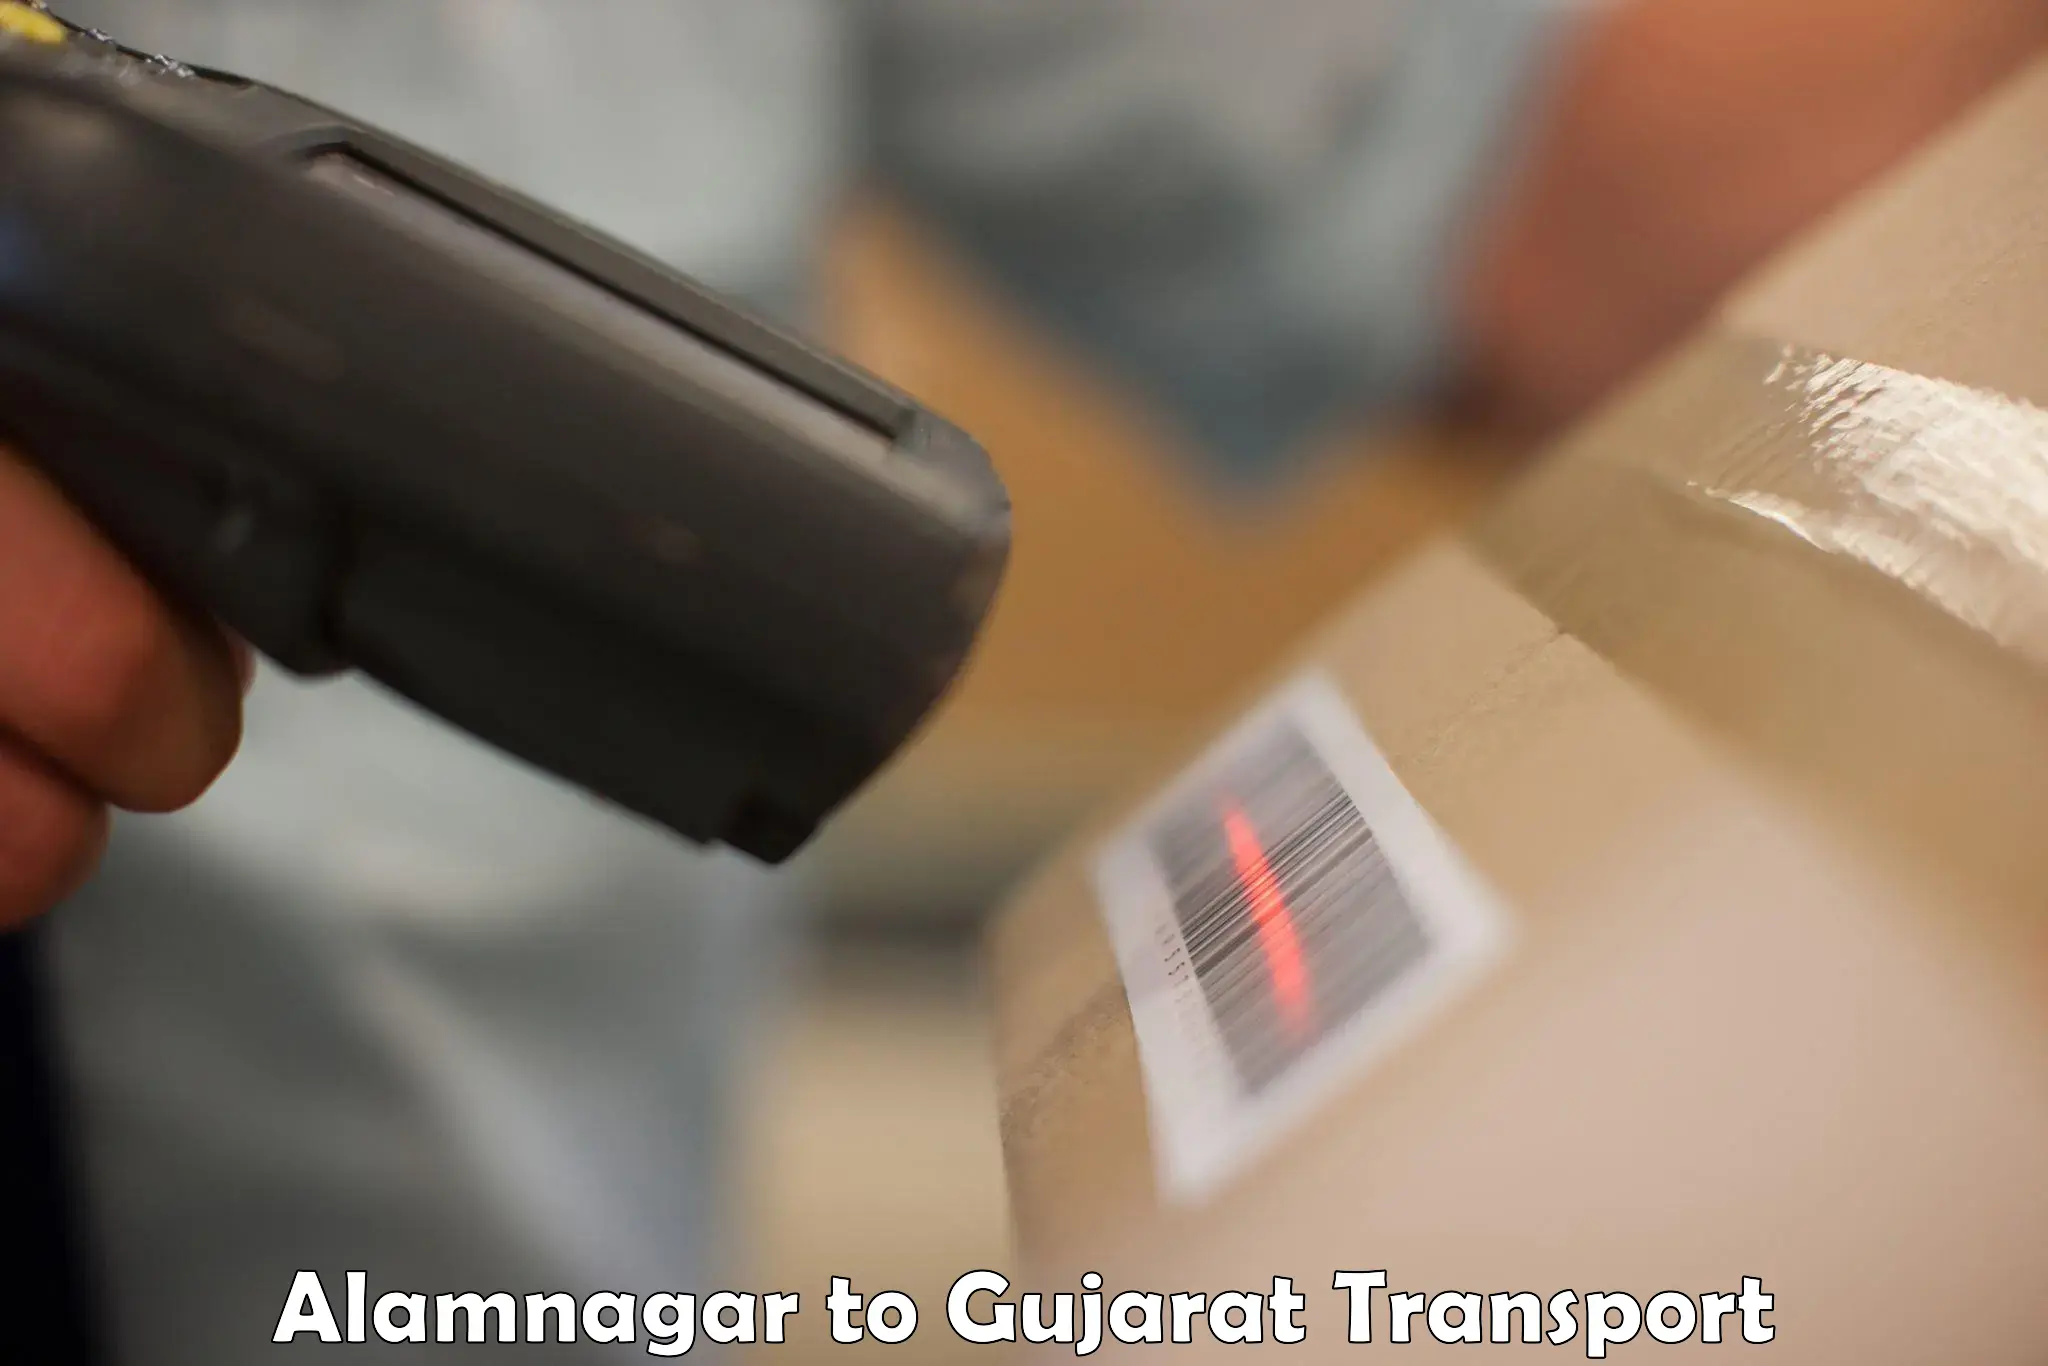 Daily transport service Alamnagar to Gujarat